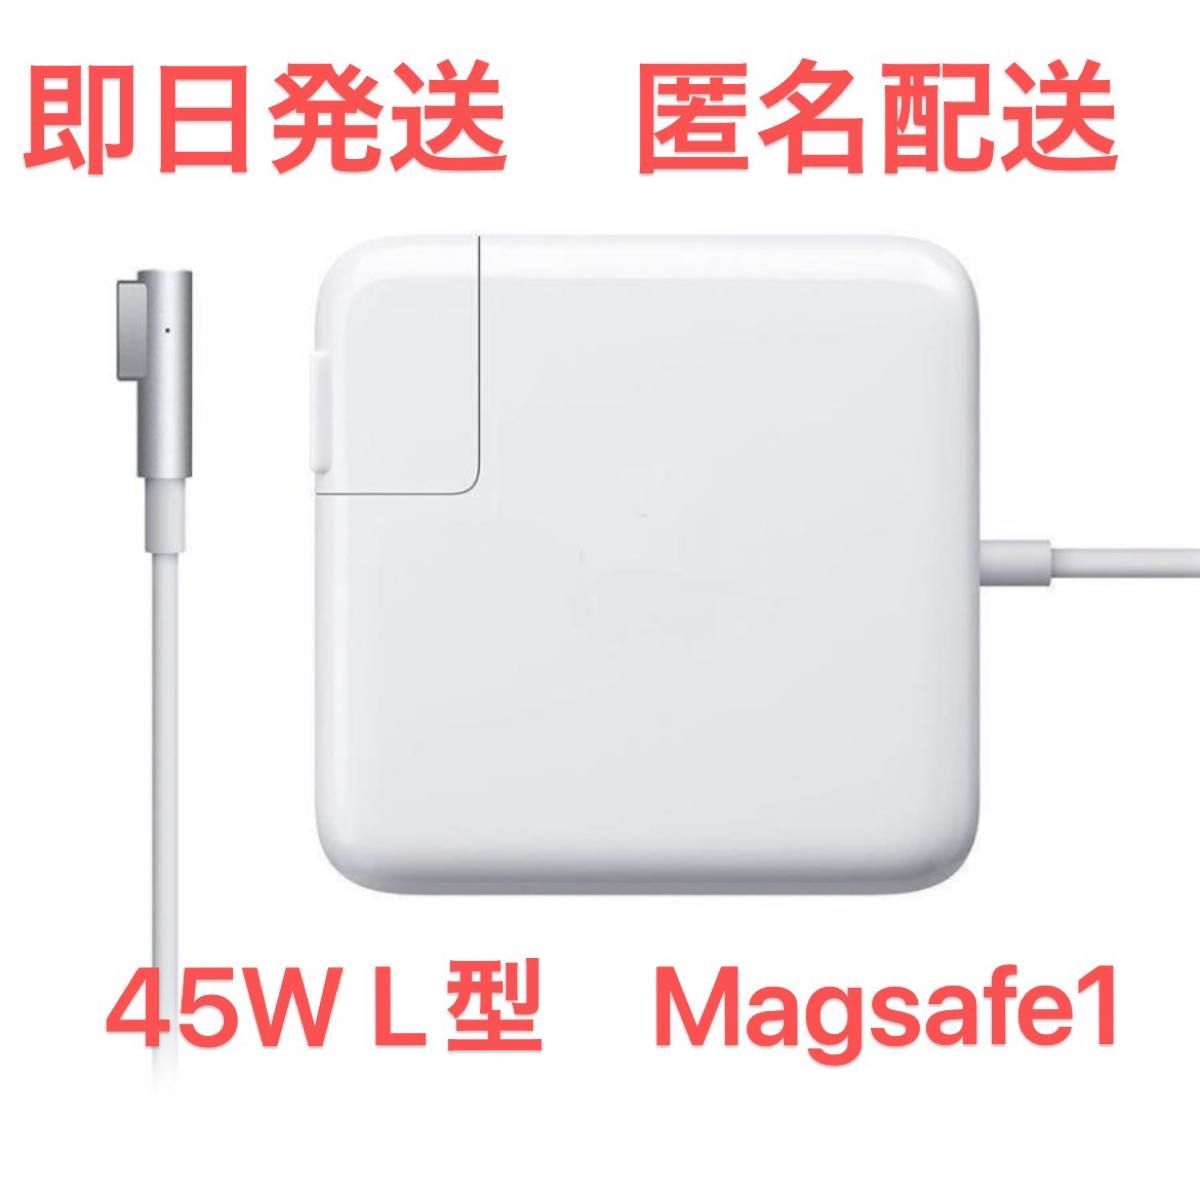 新品L型 Magsafe1 45W MacBook ACアダプター充電器